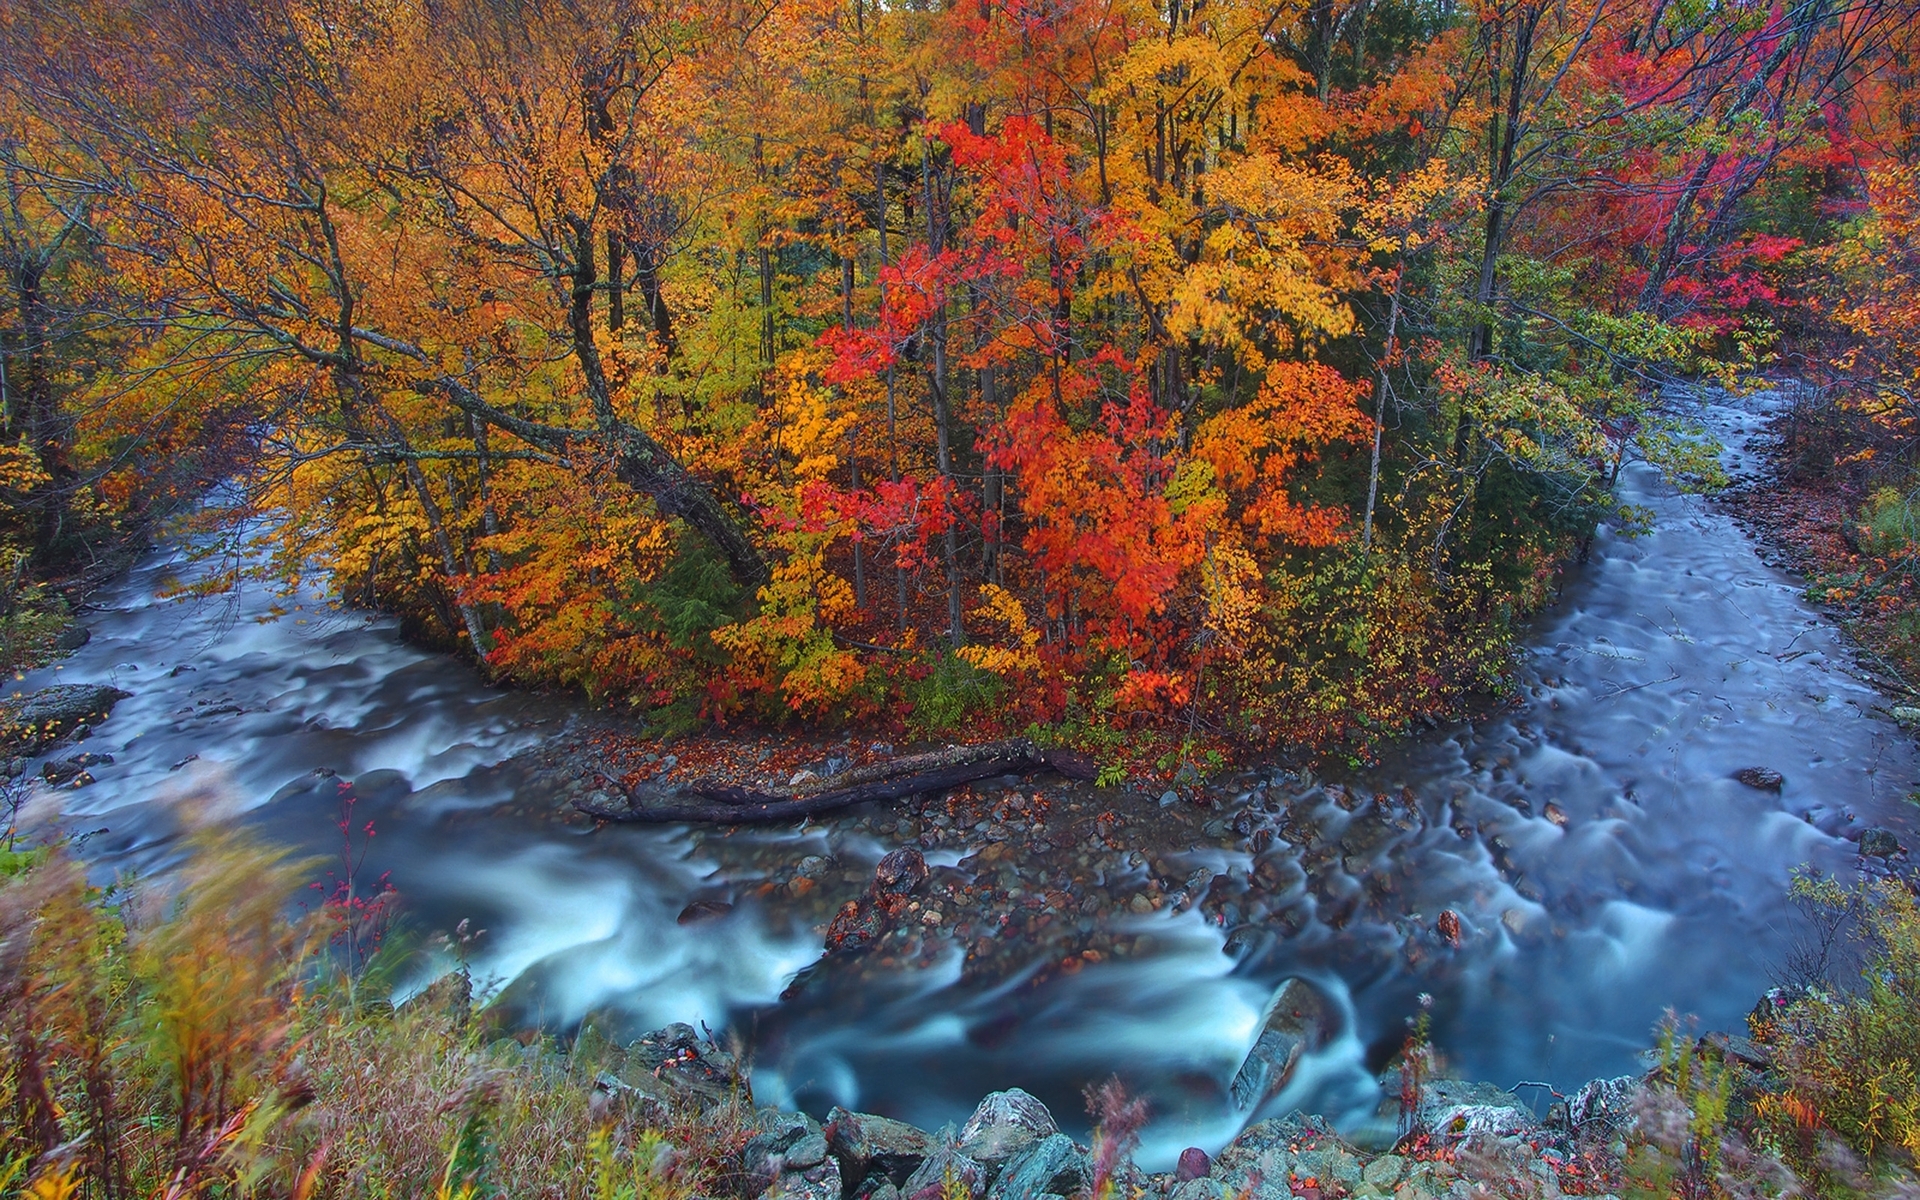 Autumn Forest & Wild Stream wallpapers | Autumn Forest & Wild Stream ...